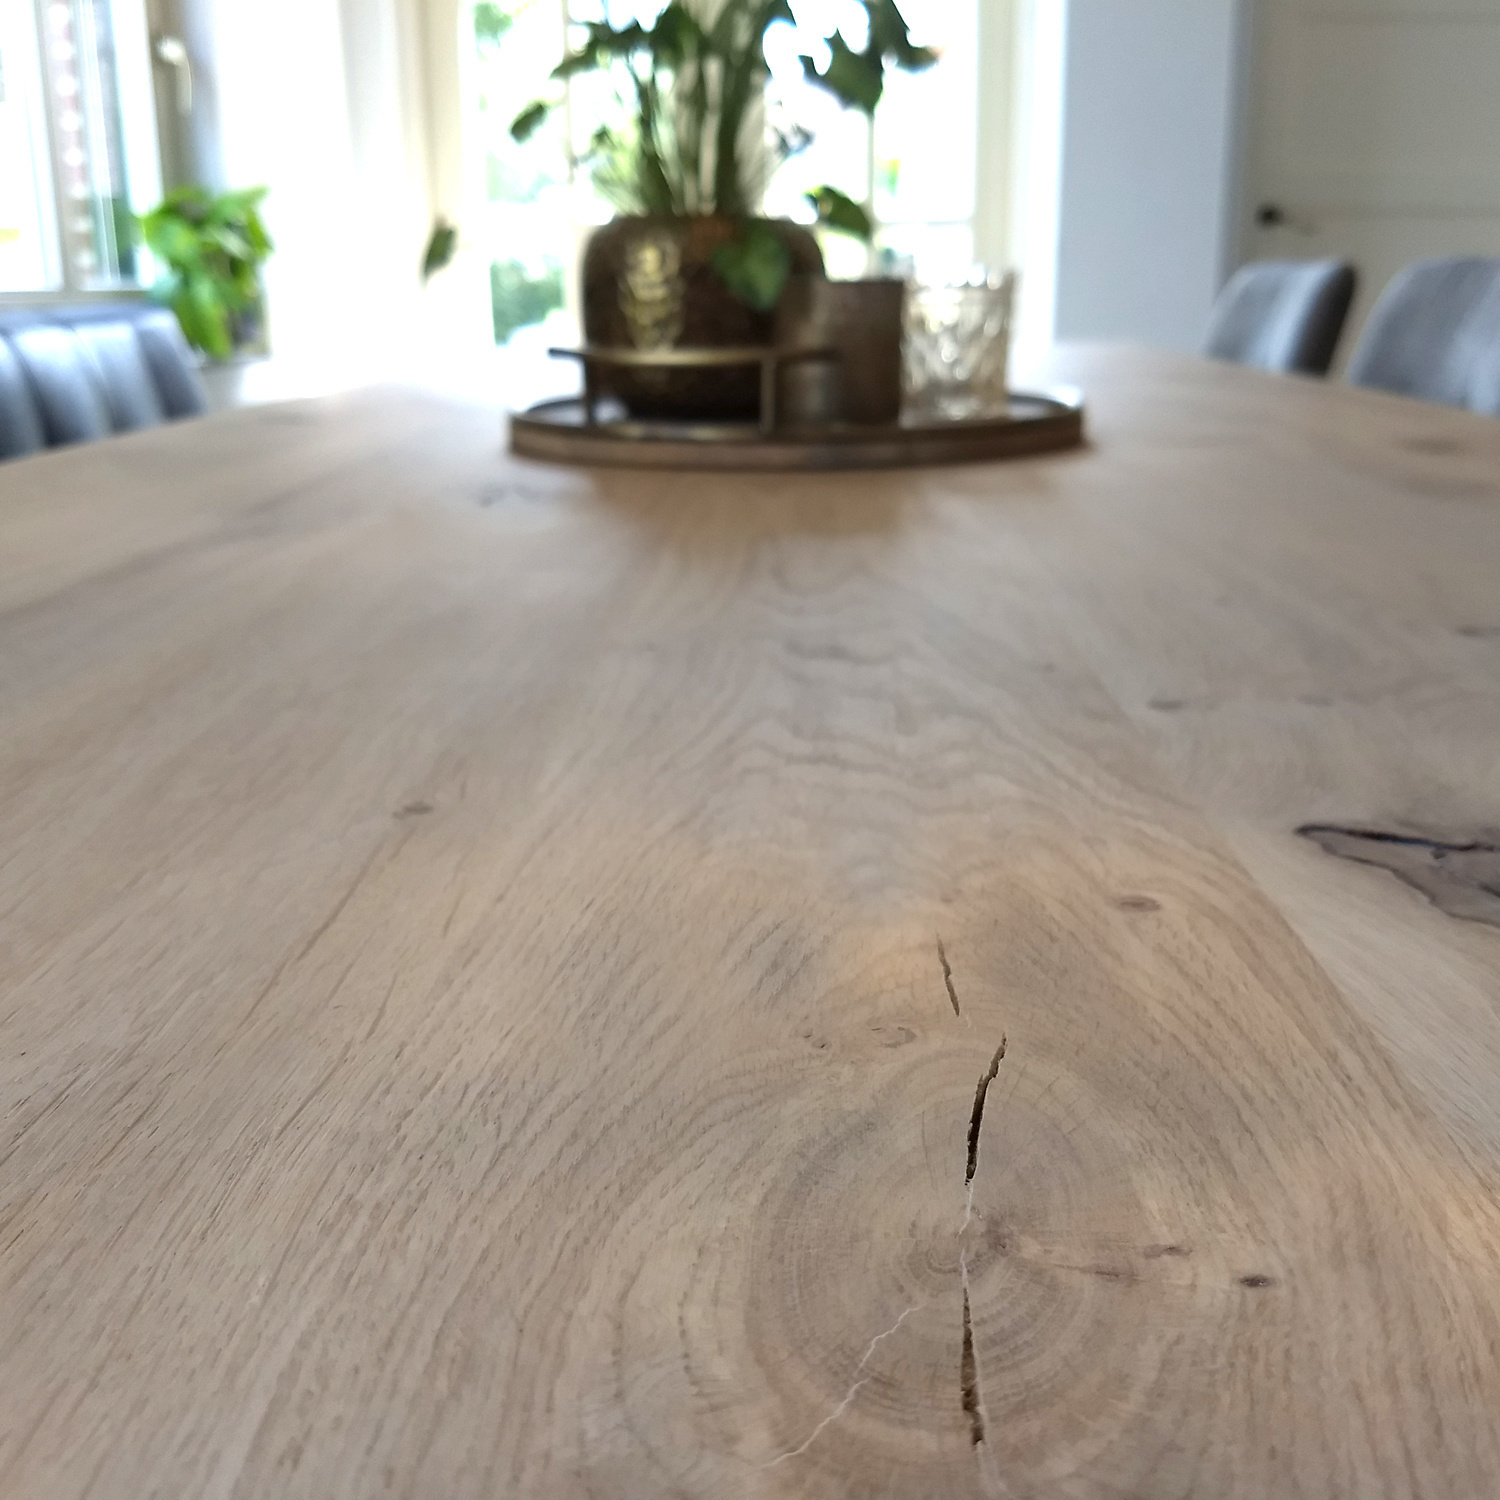  Tischplatte Eiche - 4 cm dick (1-Schicht) - Breite Lamellen (10 - 12 cm breit) - Eichenholz rustikal - verleimt & künstlich getrocknet (HF 8-12%) - verschiedene Größen